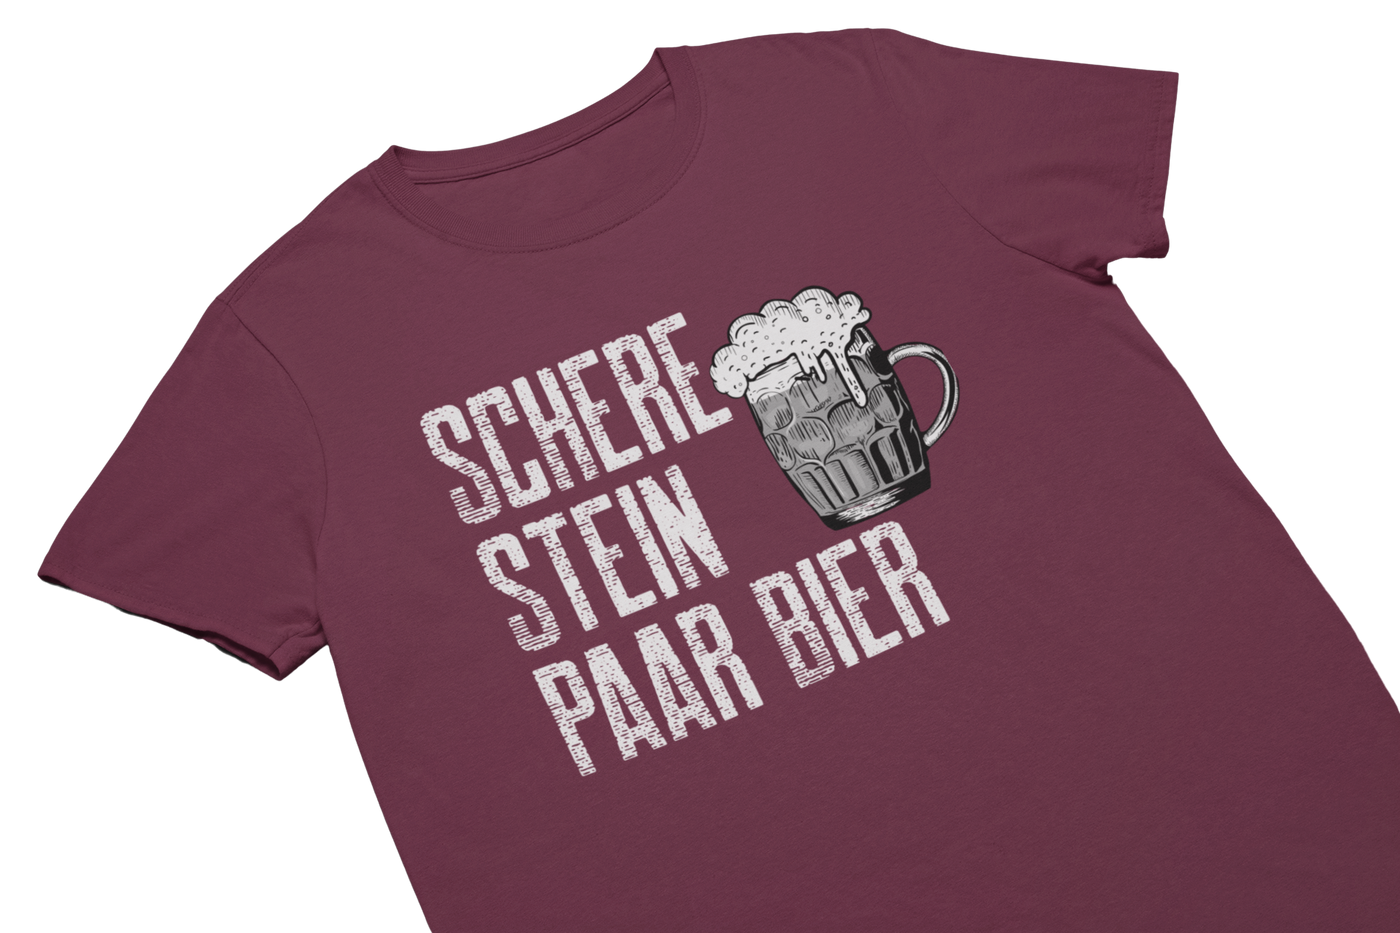 SCHERE STEIN PAAR BIER - T-Shirt Burgund